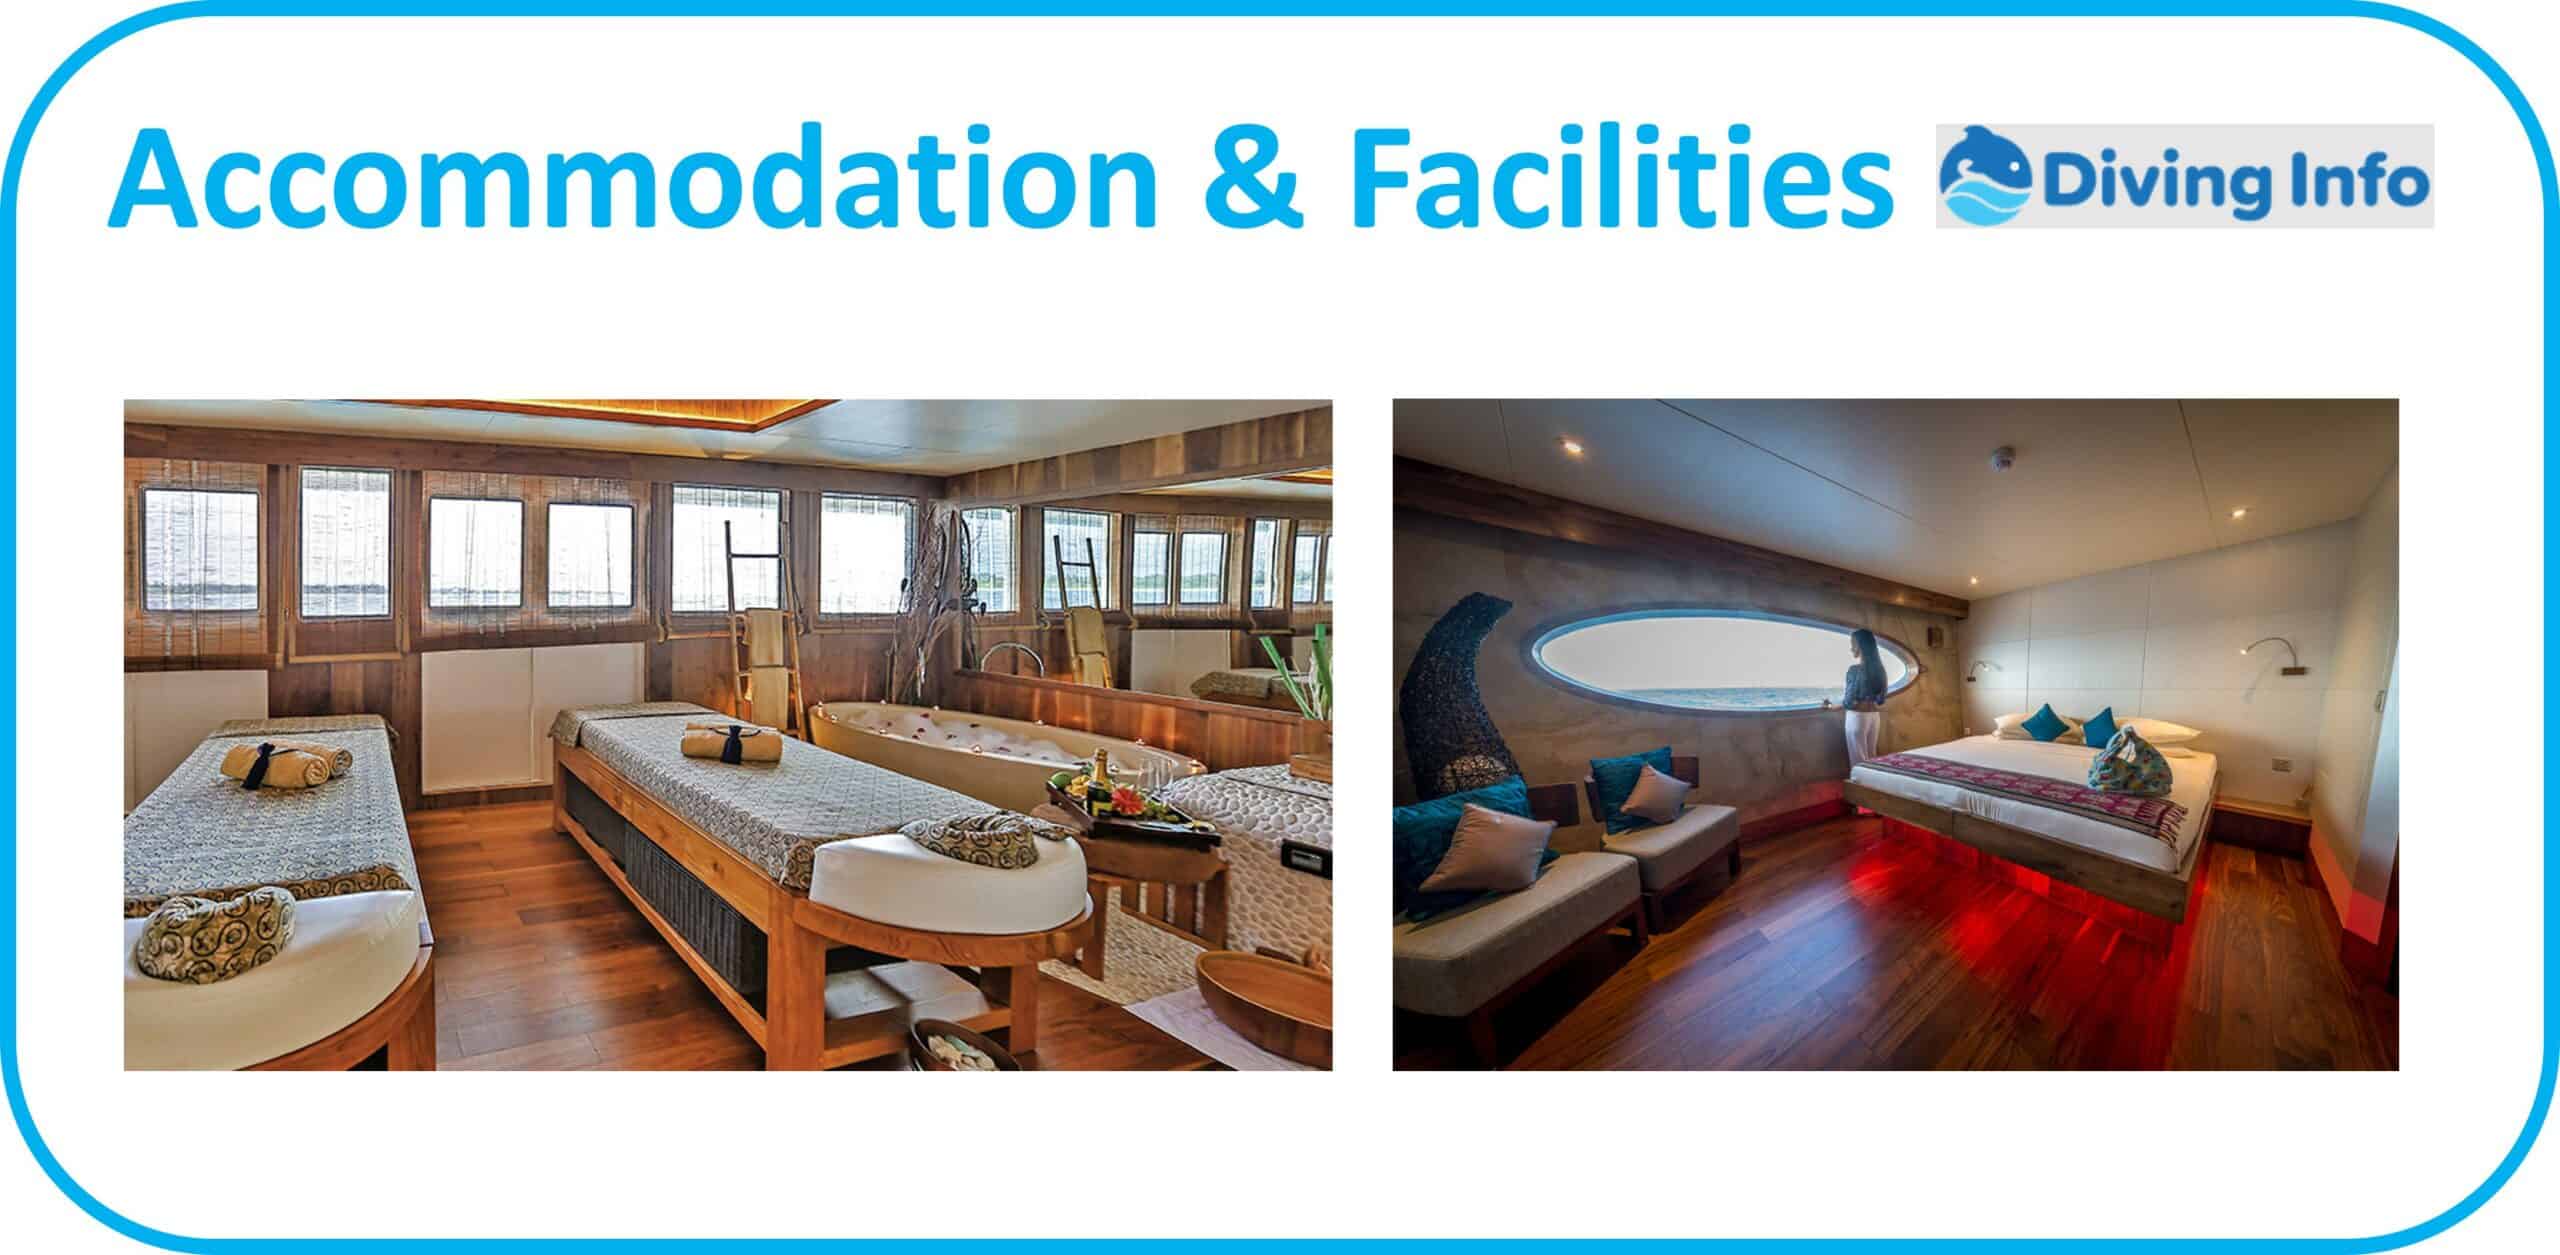 Scubaspa Yang - Accommodation & Facilities